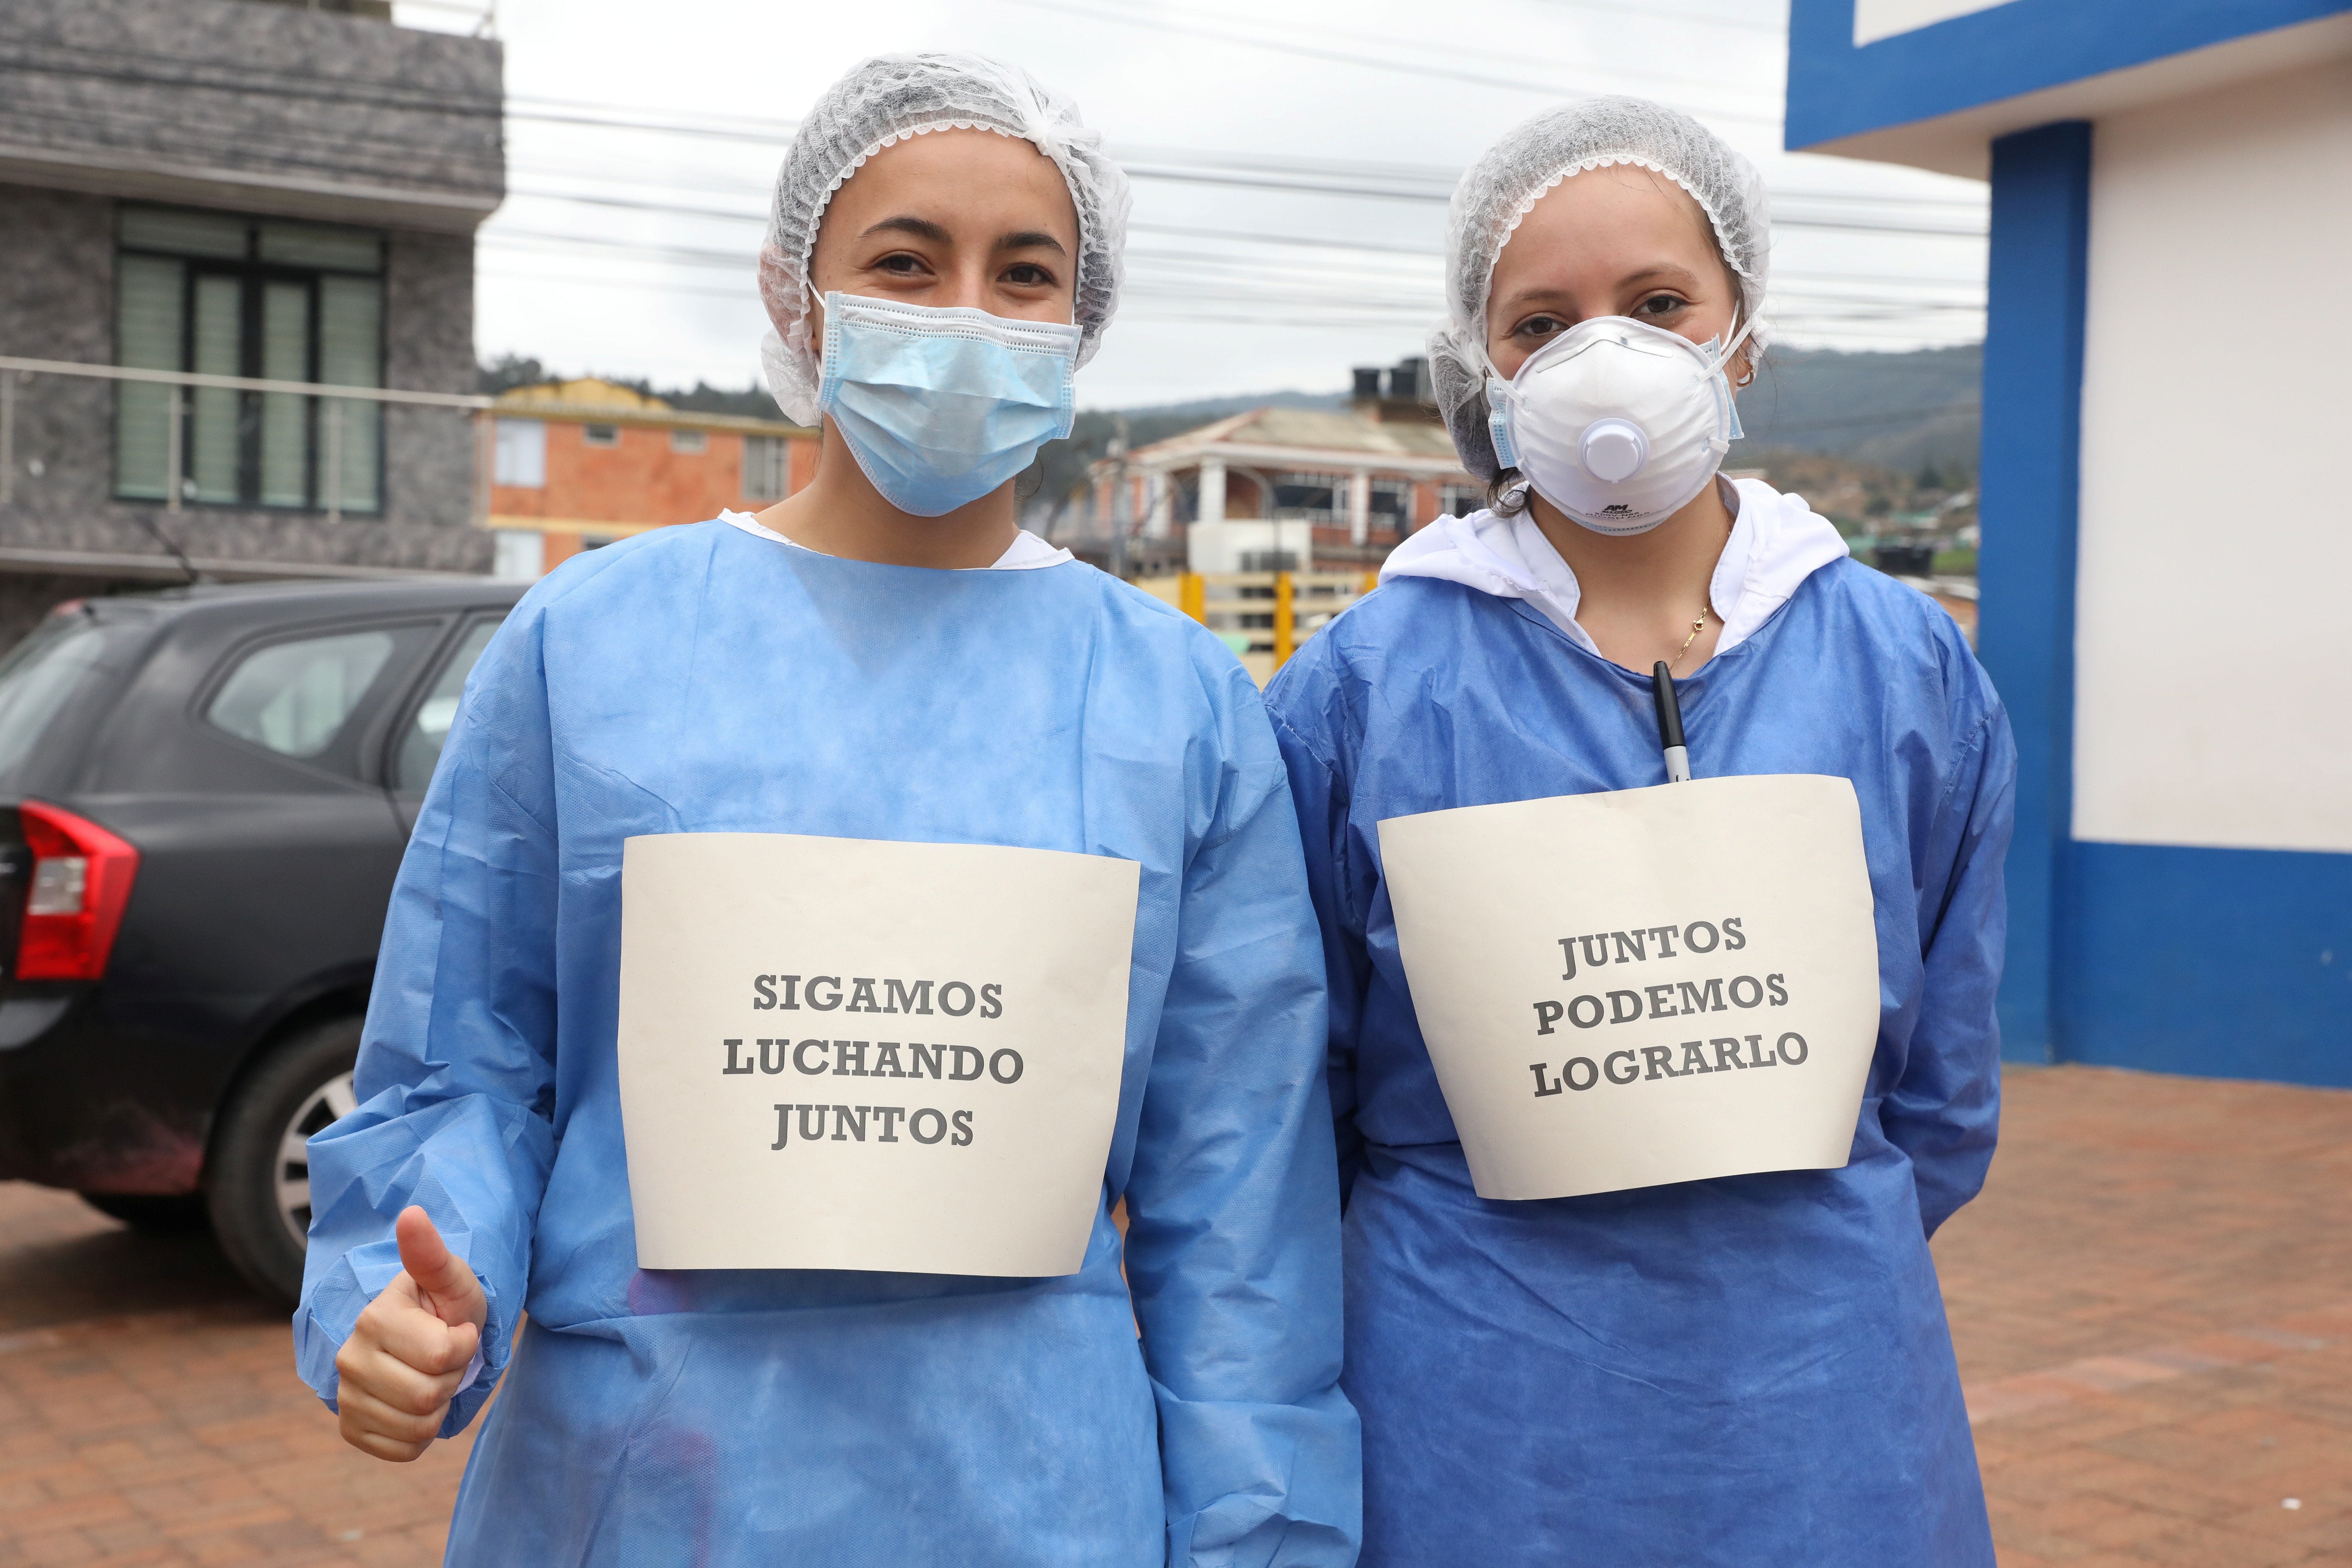 Enfermeras del Hospital de Suesca con carteles que dicen "Sigamos luchando juntos" y "Juntos podemos lograrlo" en Suesca, Colombia, el 23 de abril de 2020 (Javier Dussan/Gobierno de Cundinamarca/Manifestación a través de REUTERS)